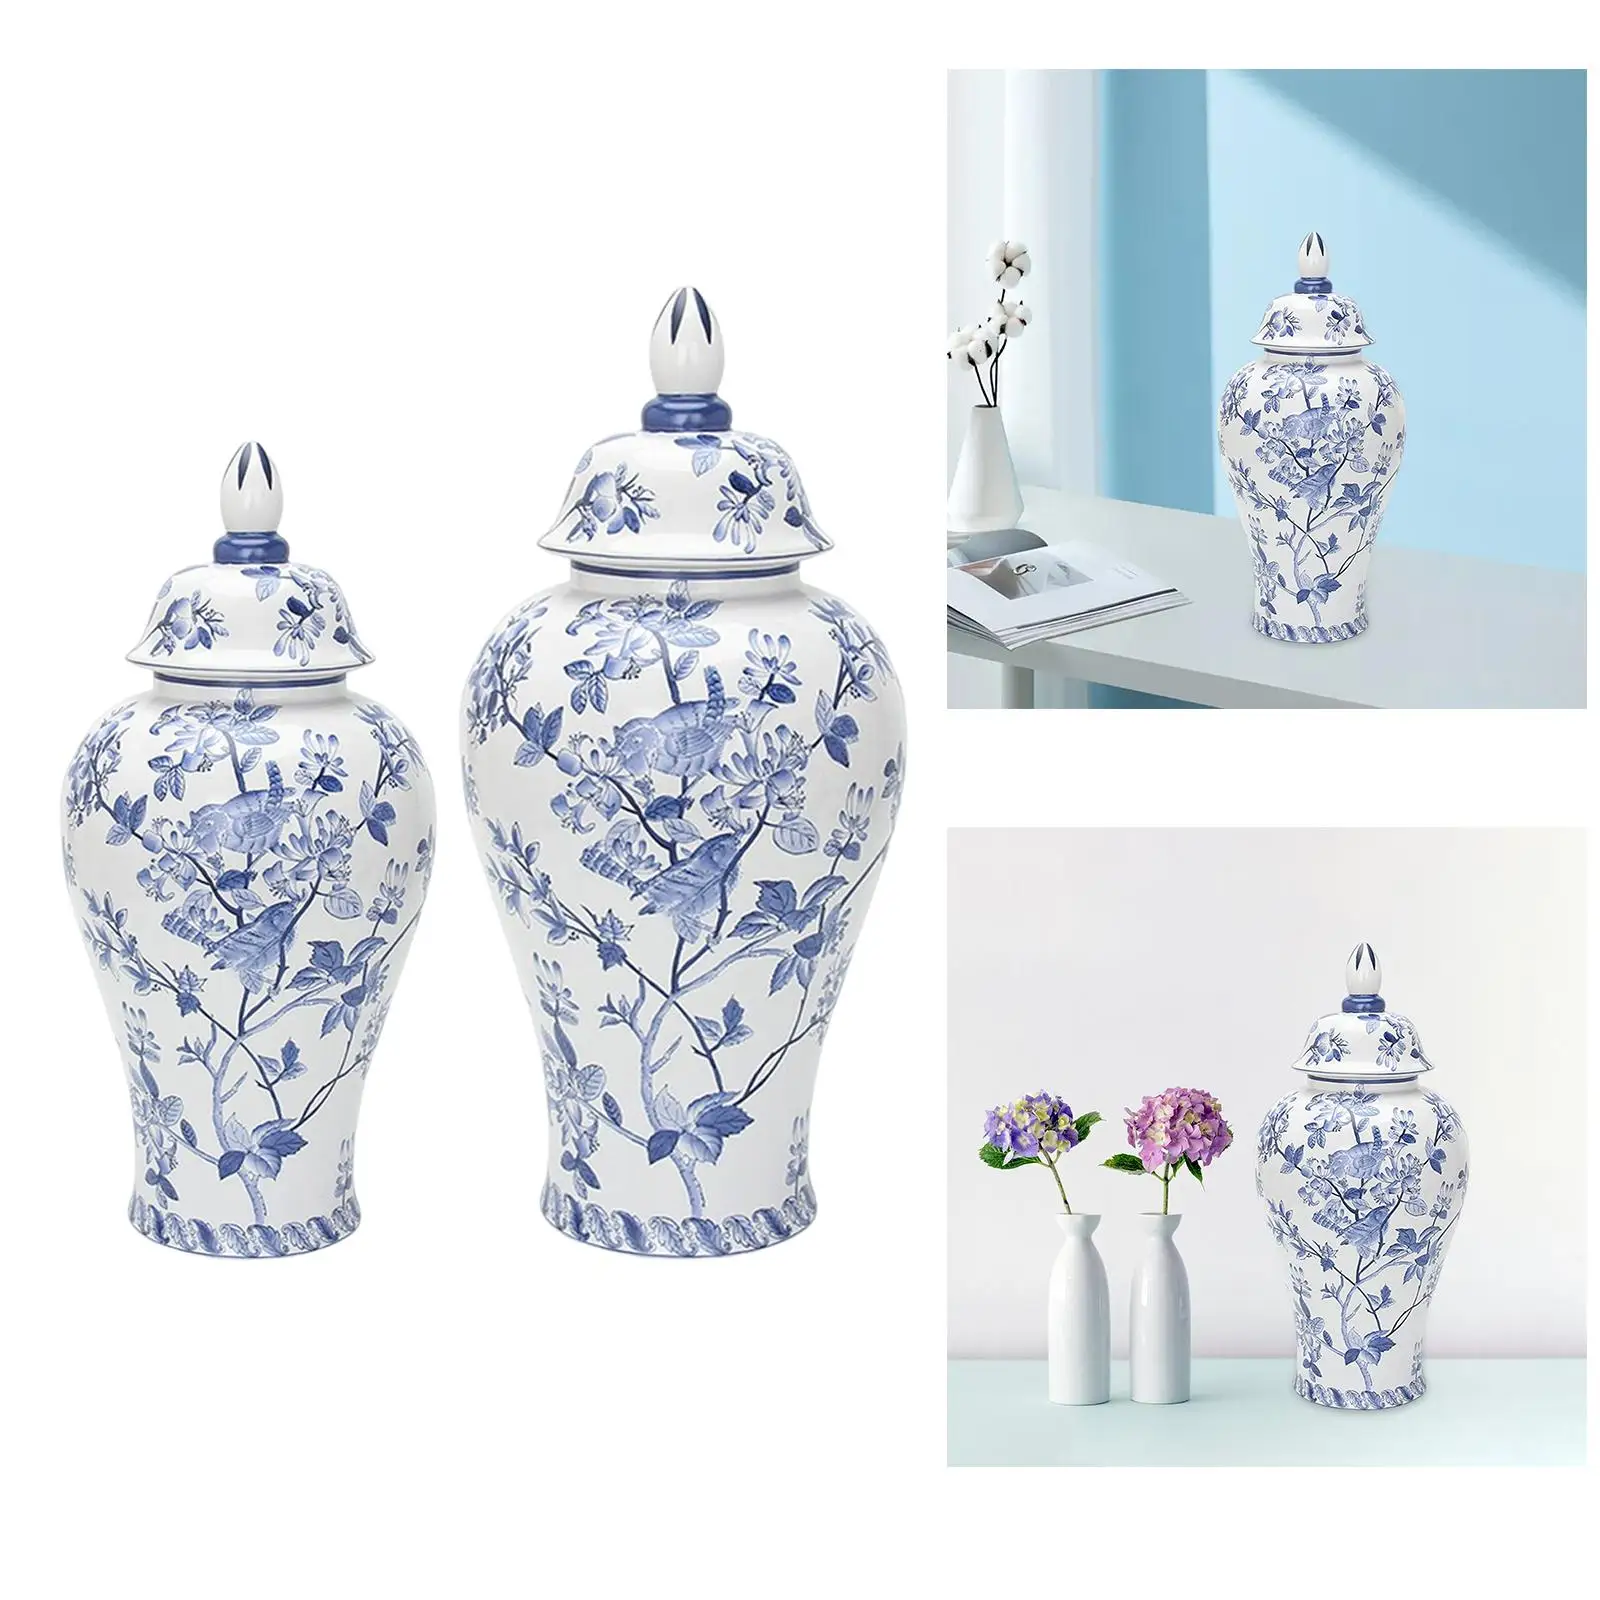 Porcelain Ginger Jar Decoration Bud Vase Ceramic Flower Vase for Bedroom